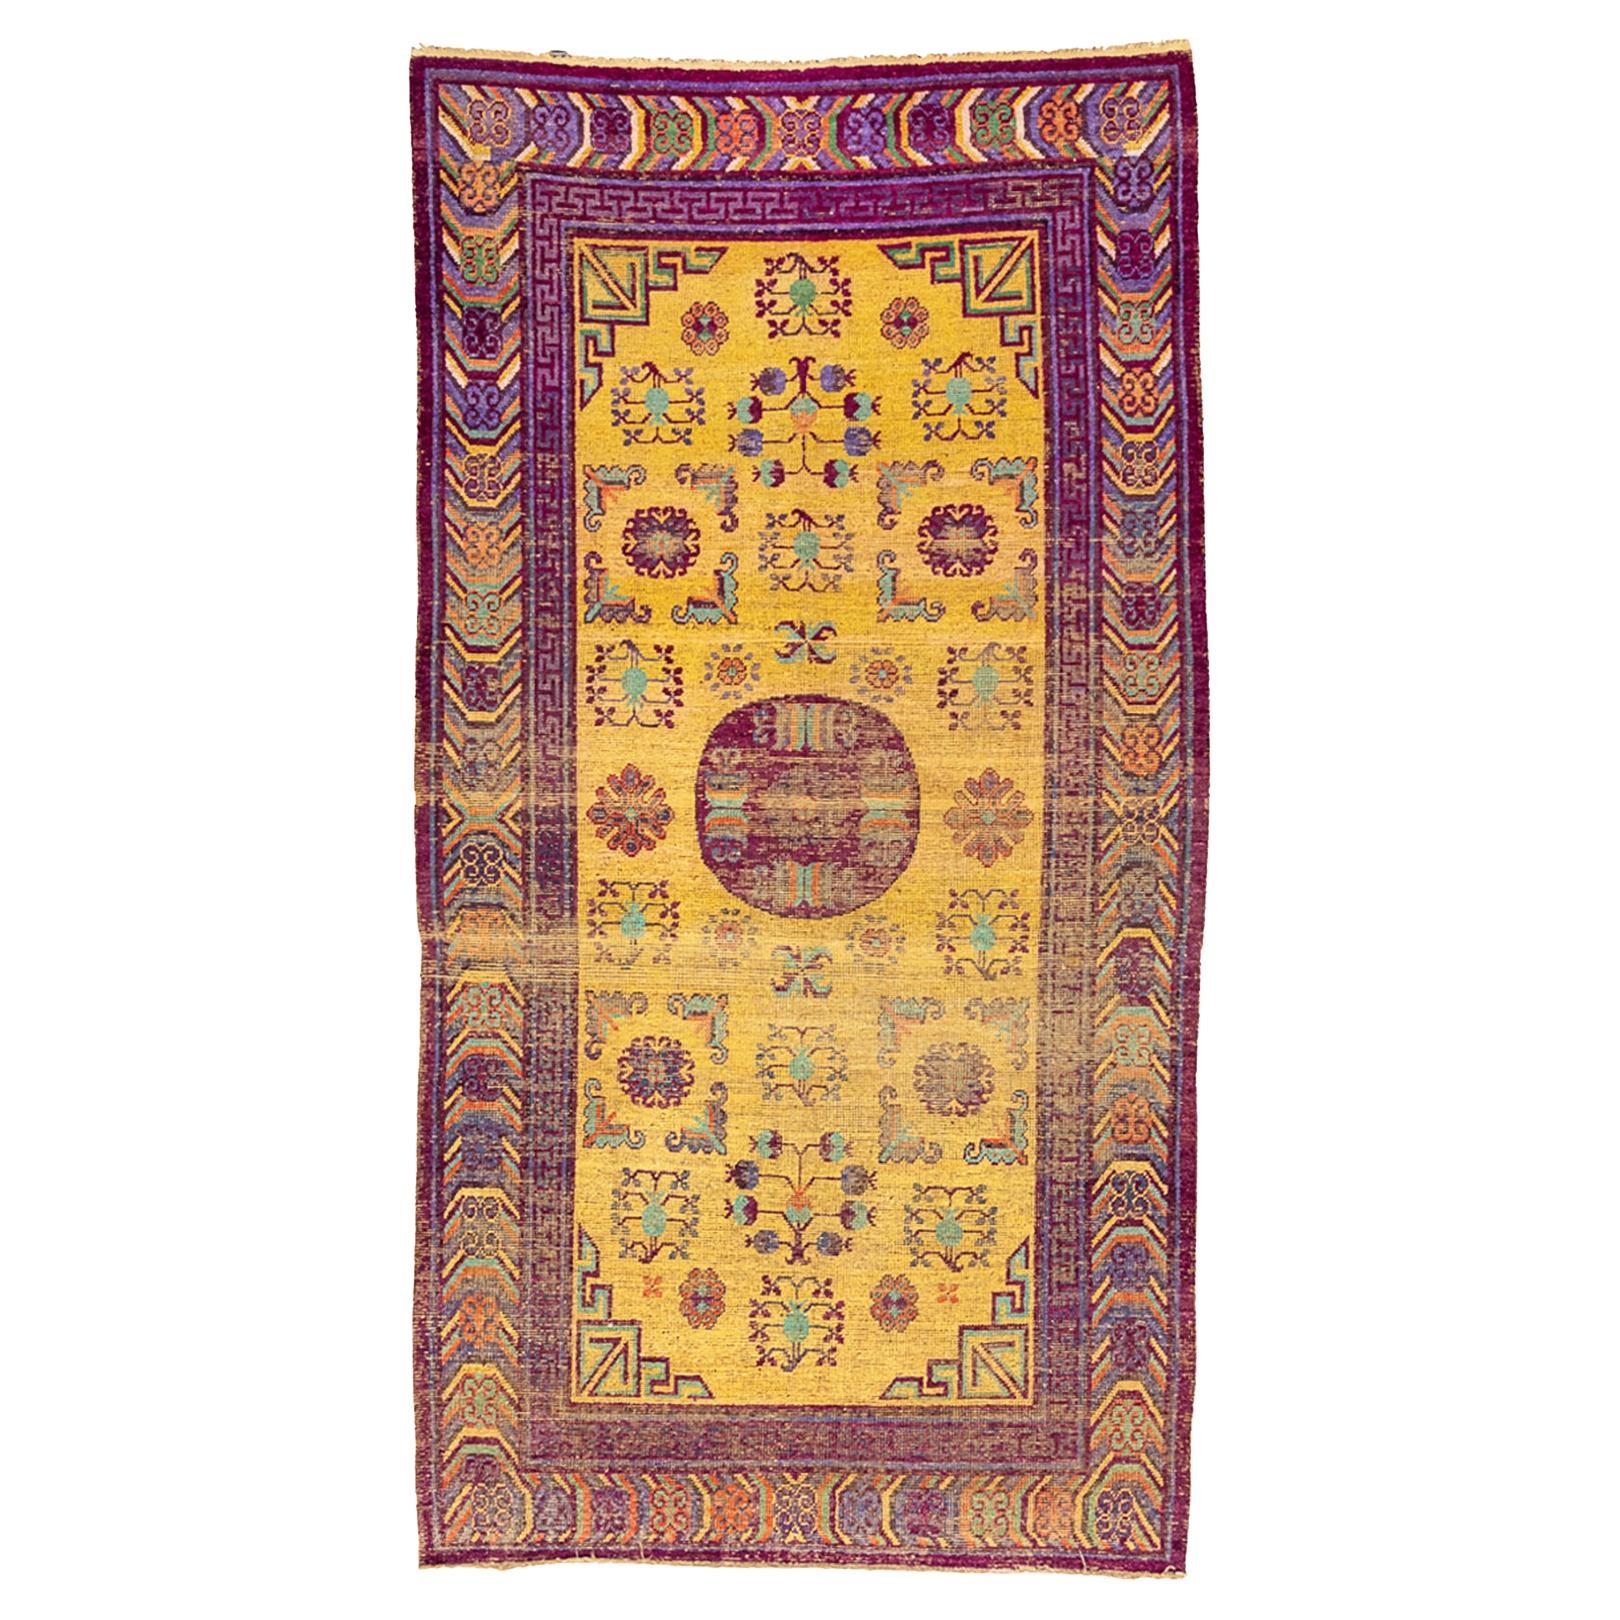 Antique Khotan Silk Rug Yellow Saffron Color For Sale